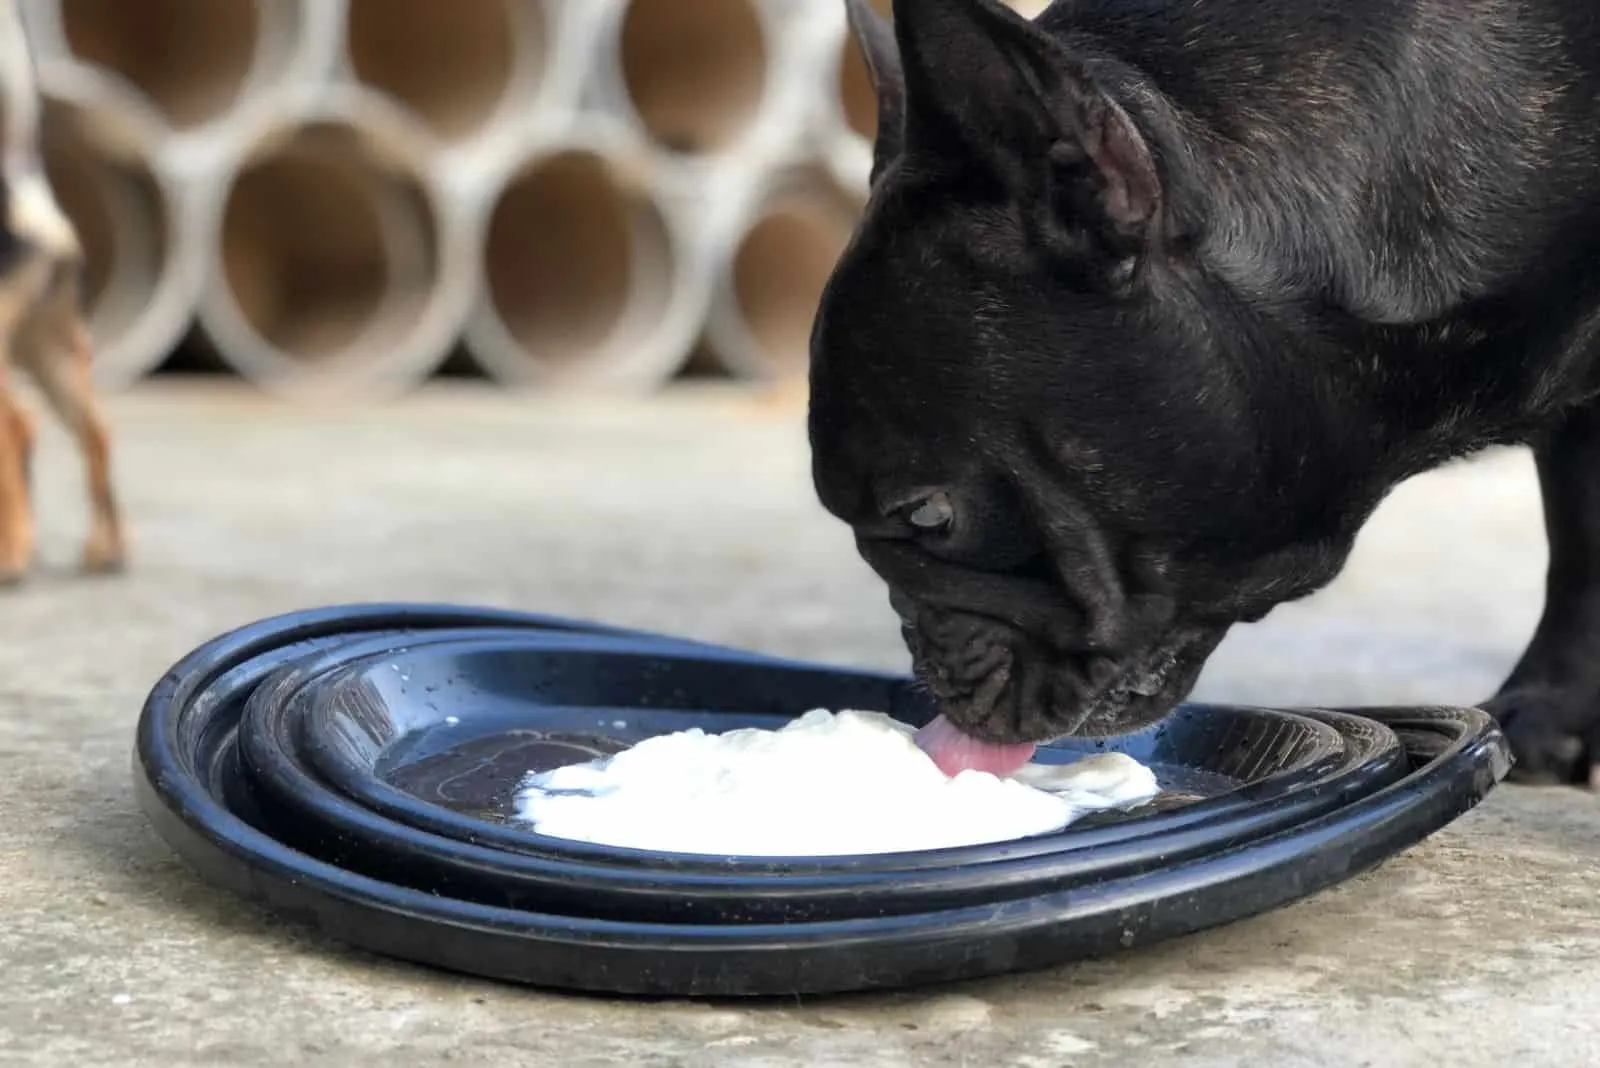 the dog eats yogurt